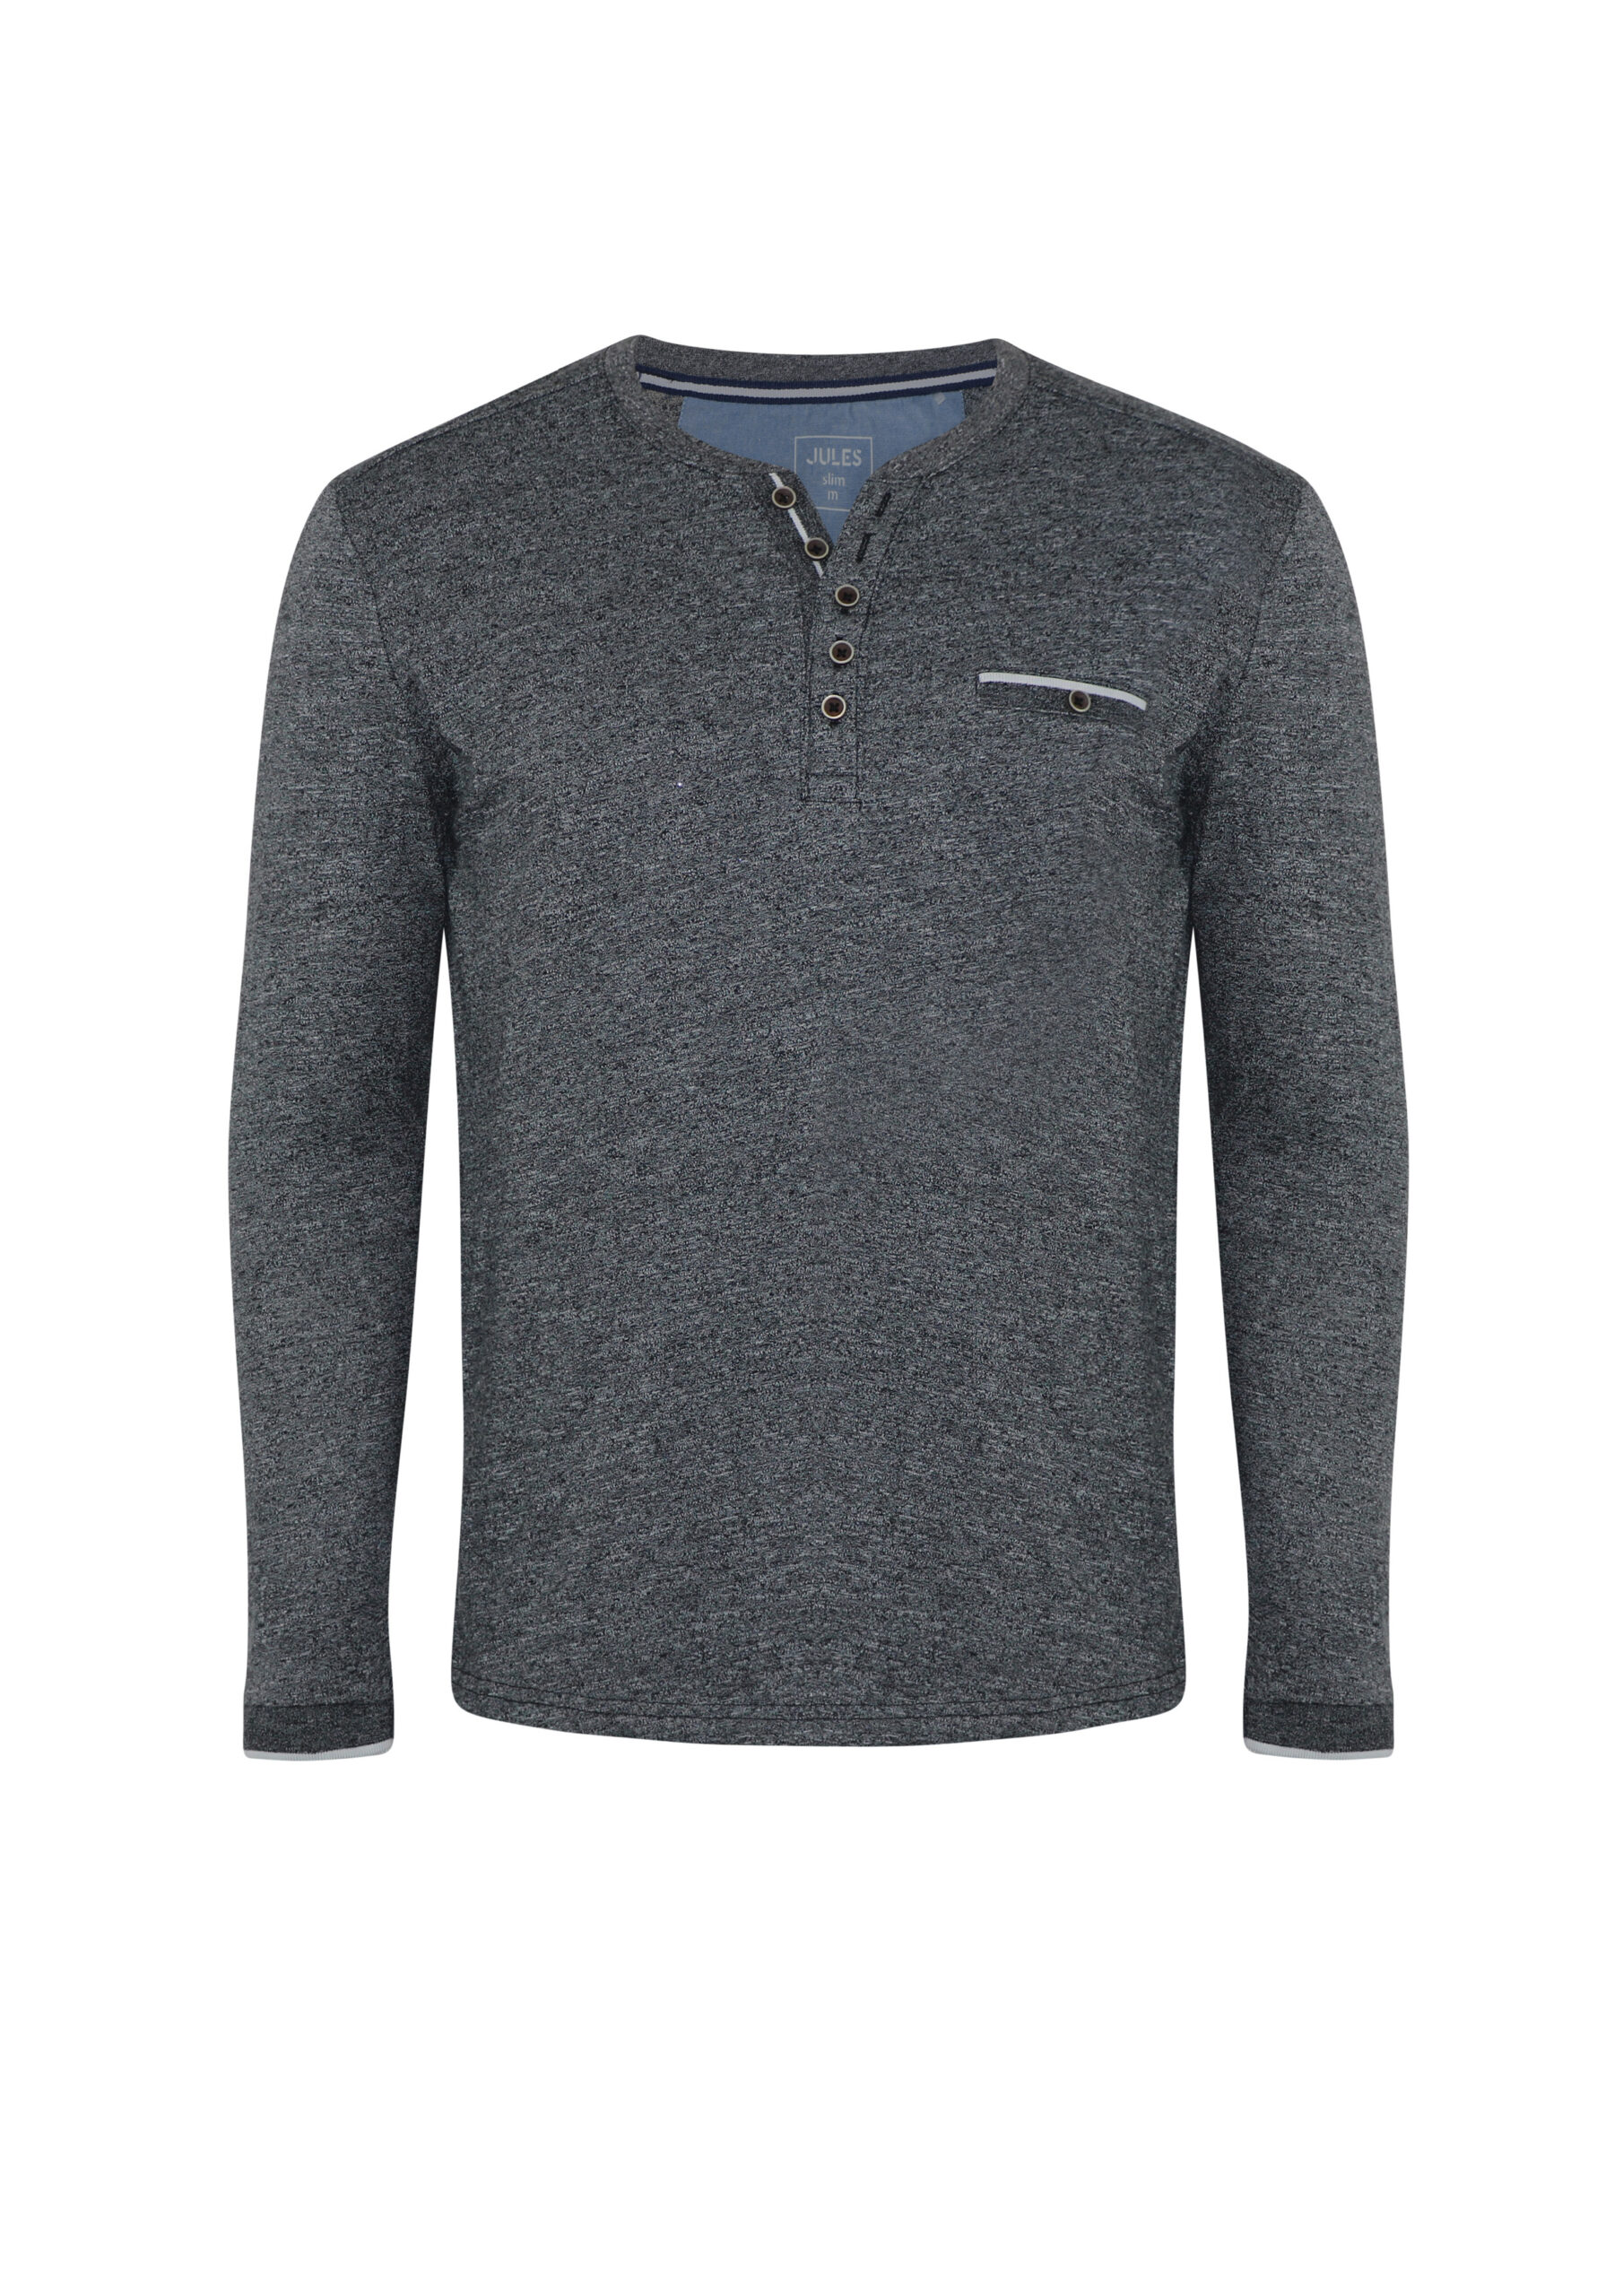 Men's Full Sleeve T-shirt - Artisan Outfitters Ltd